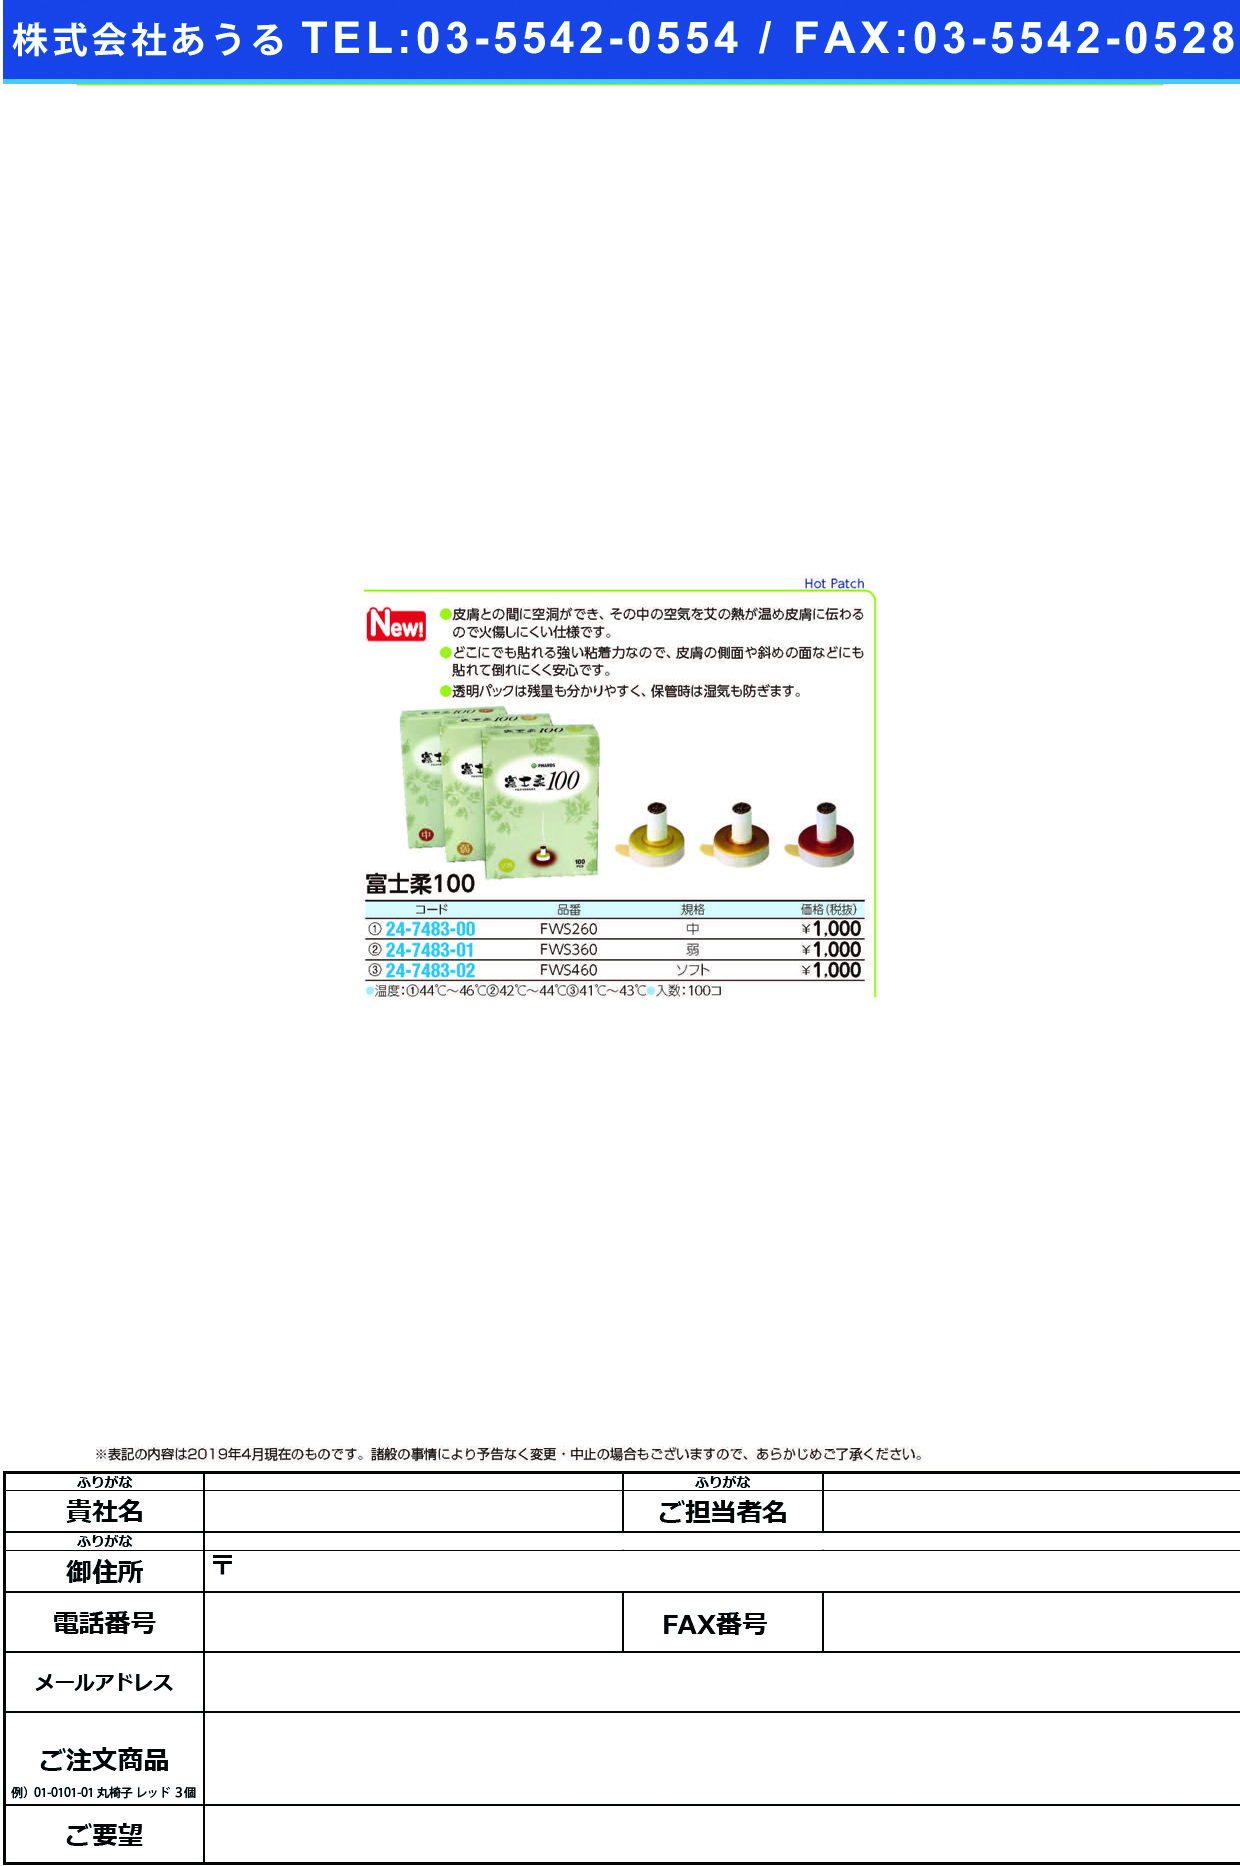 (24-7483-02)富士柔１００FWS460(ｿﾌﾄ) ﾌｼﾞﾔﾜﾗﾋｬｸ(ファロス)【1箱単位】【2019年カタログ商品】